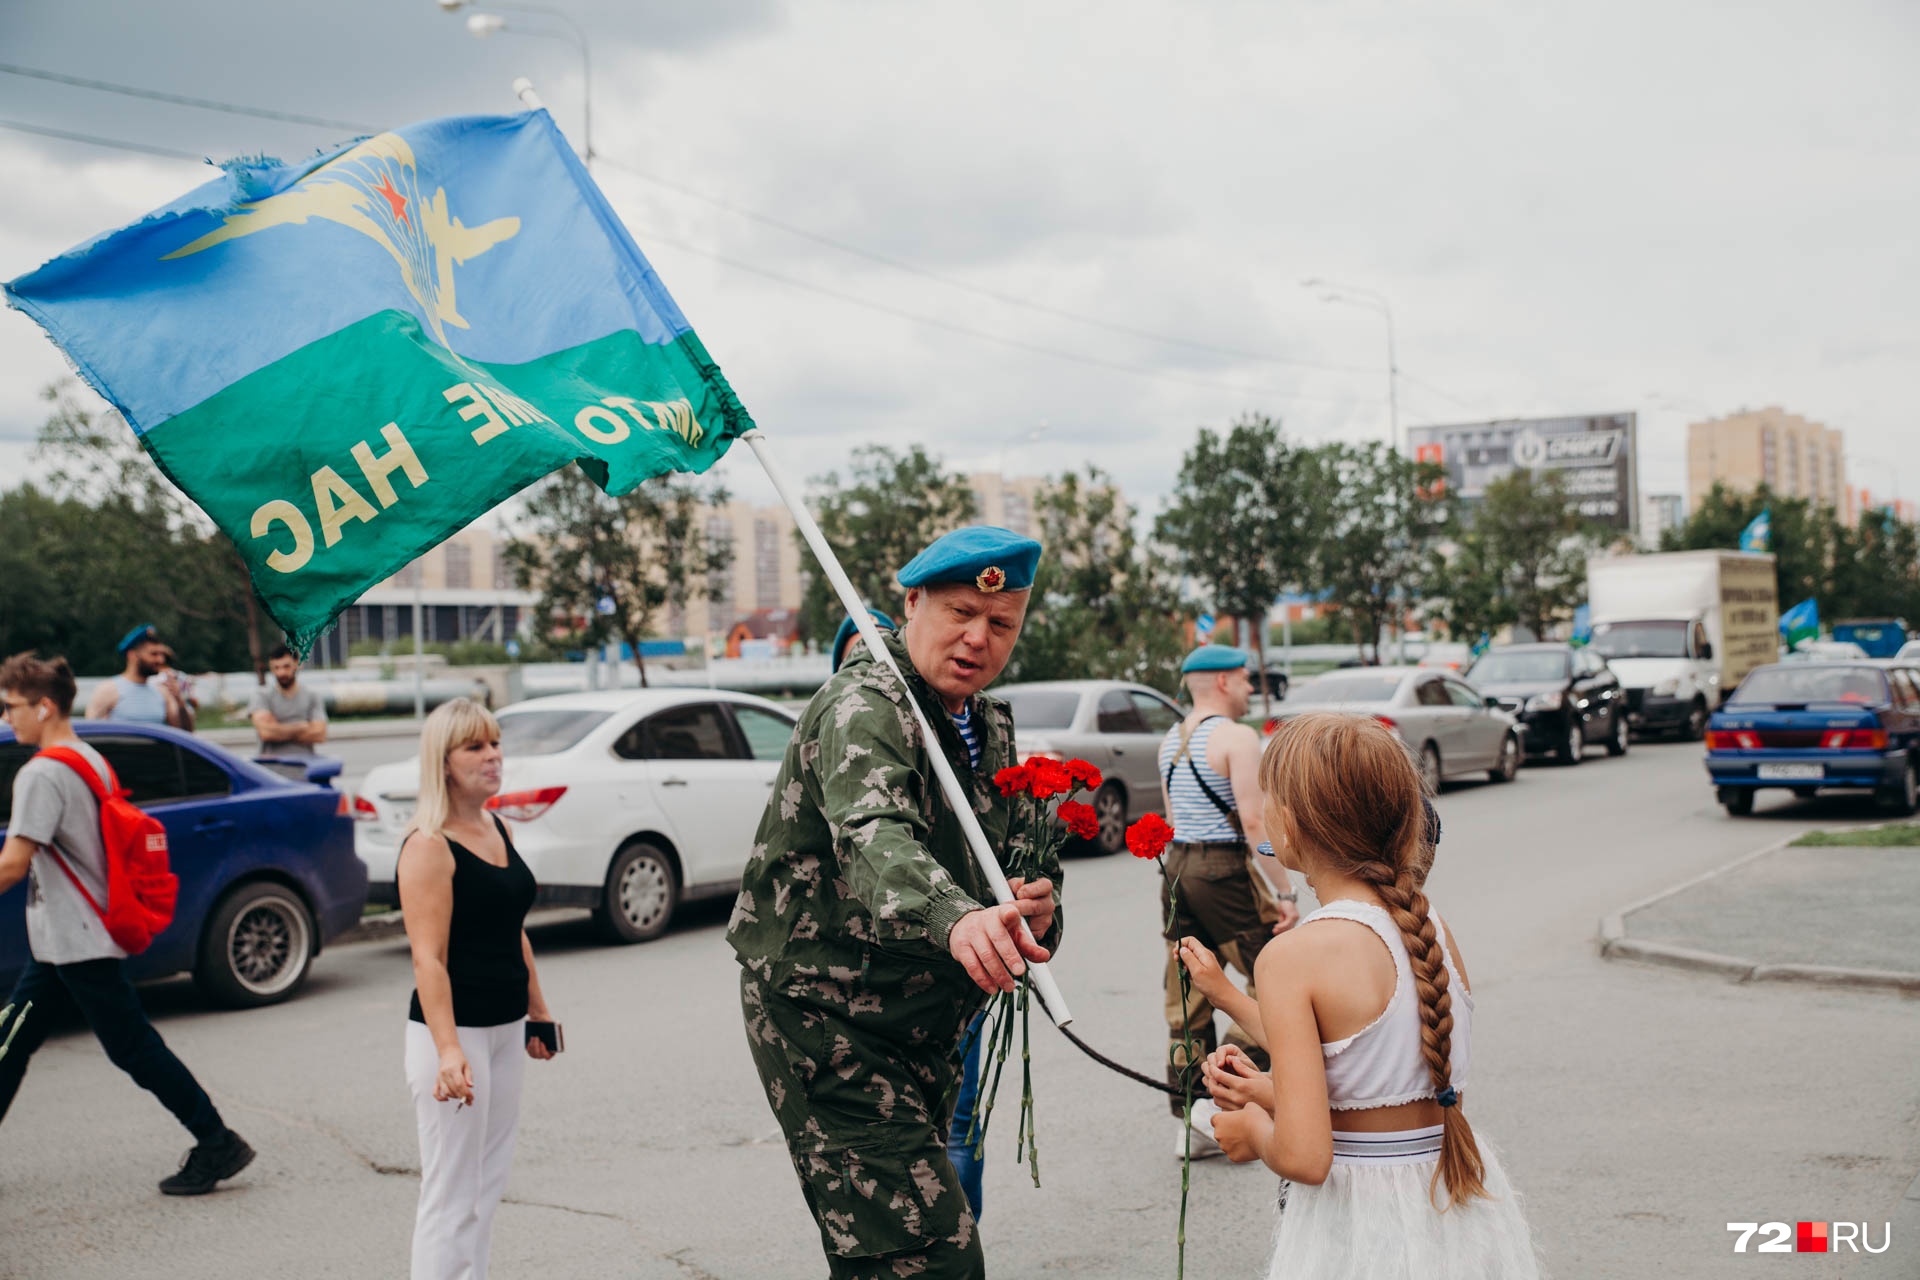 Вот один из ВДВшников, который присутствовал на улице Широтной с флагом